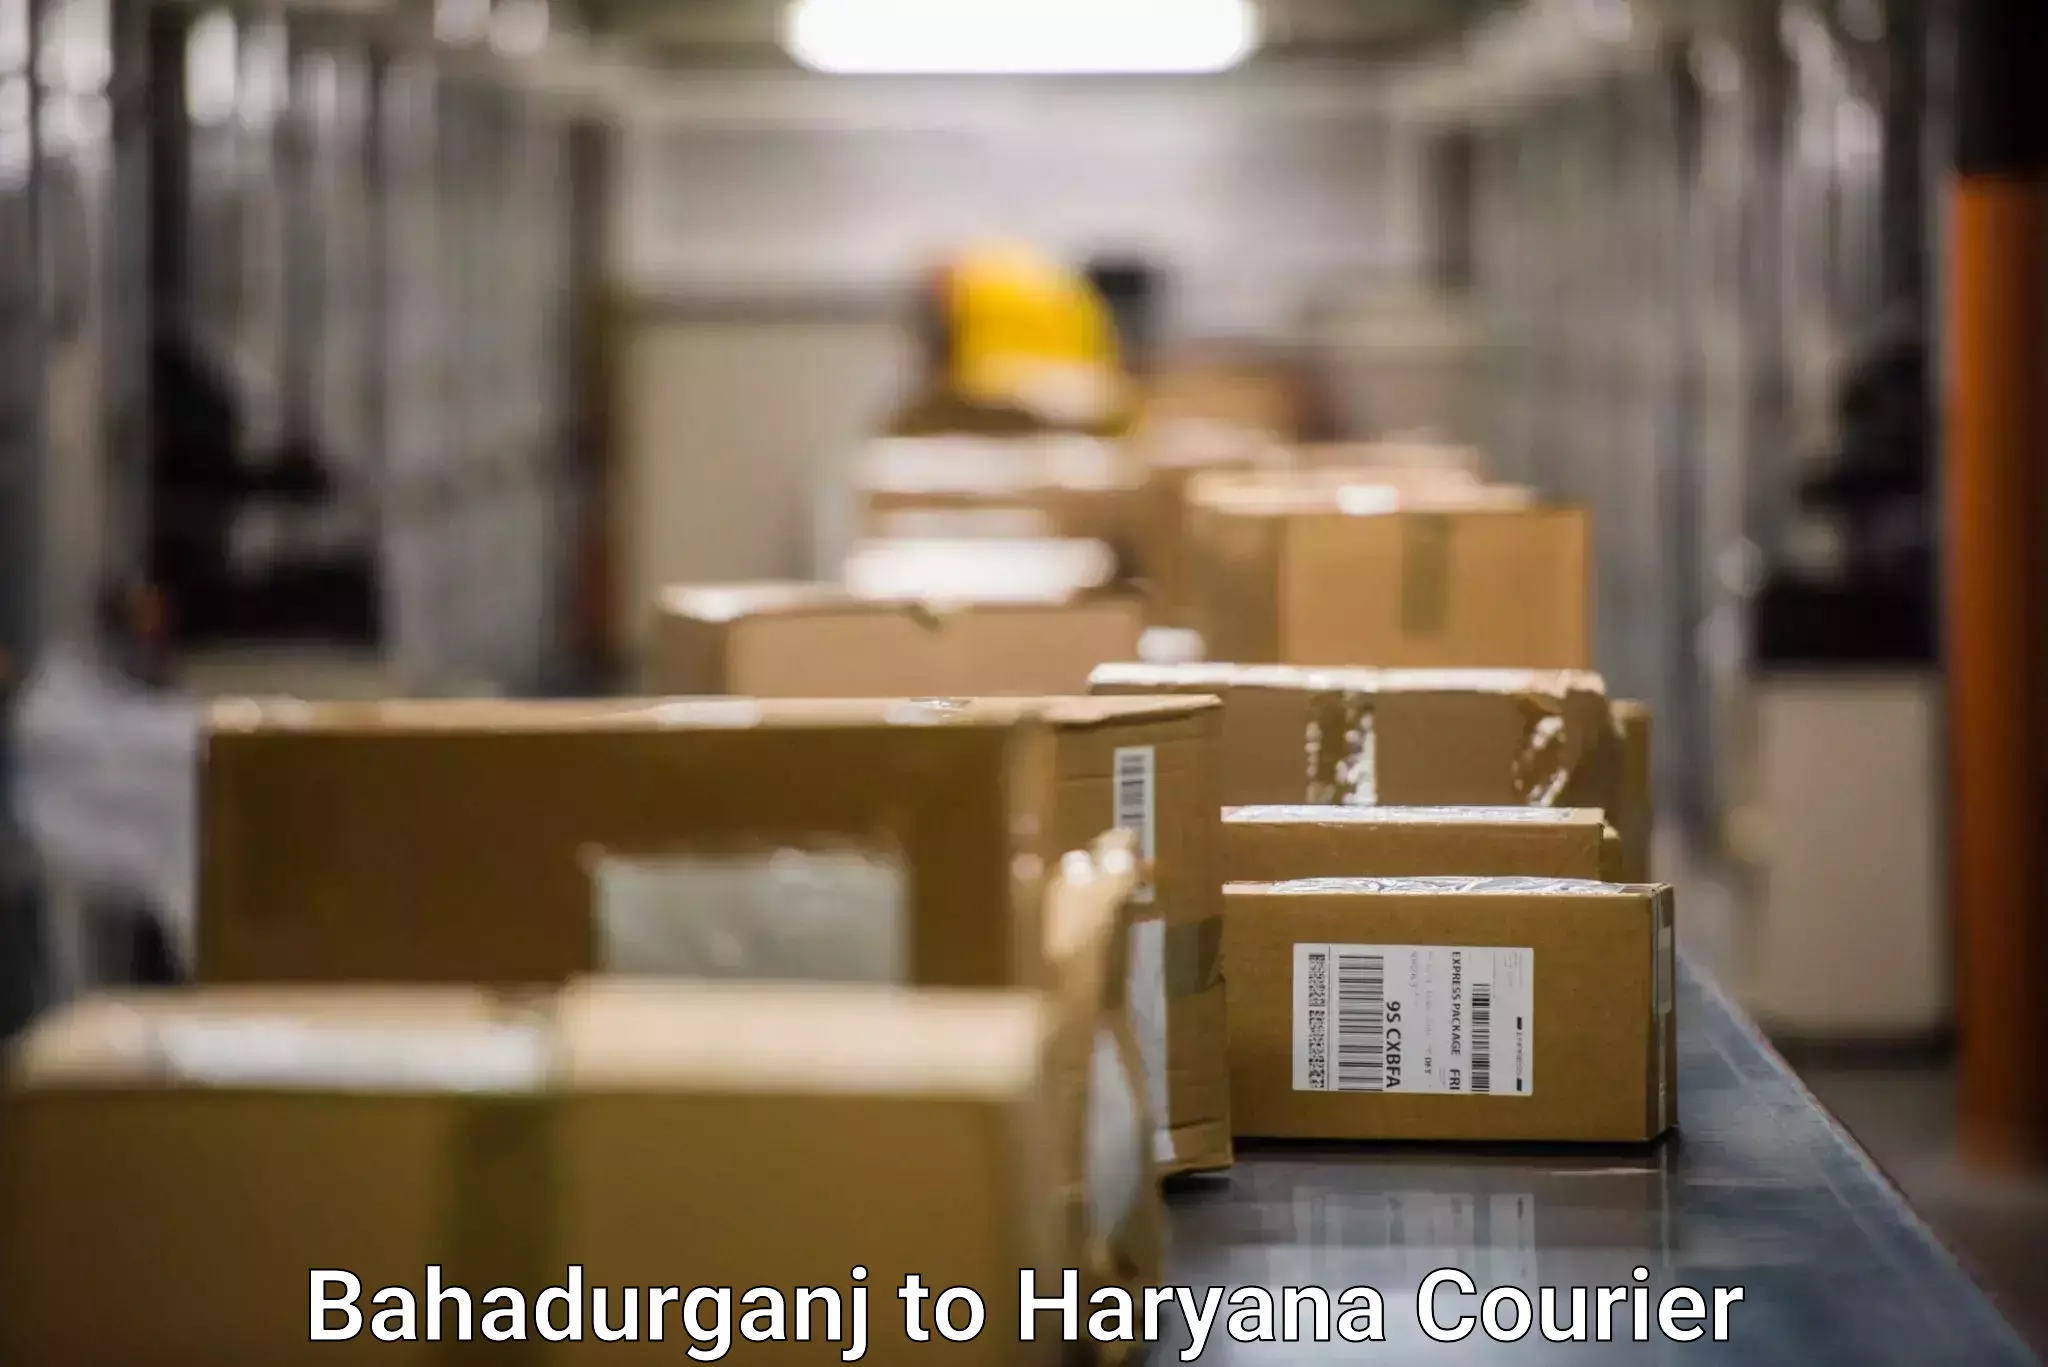 Courier service comparison Bahadurganj to Assandh